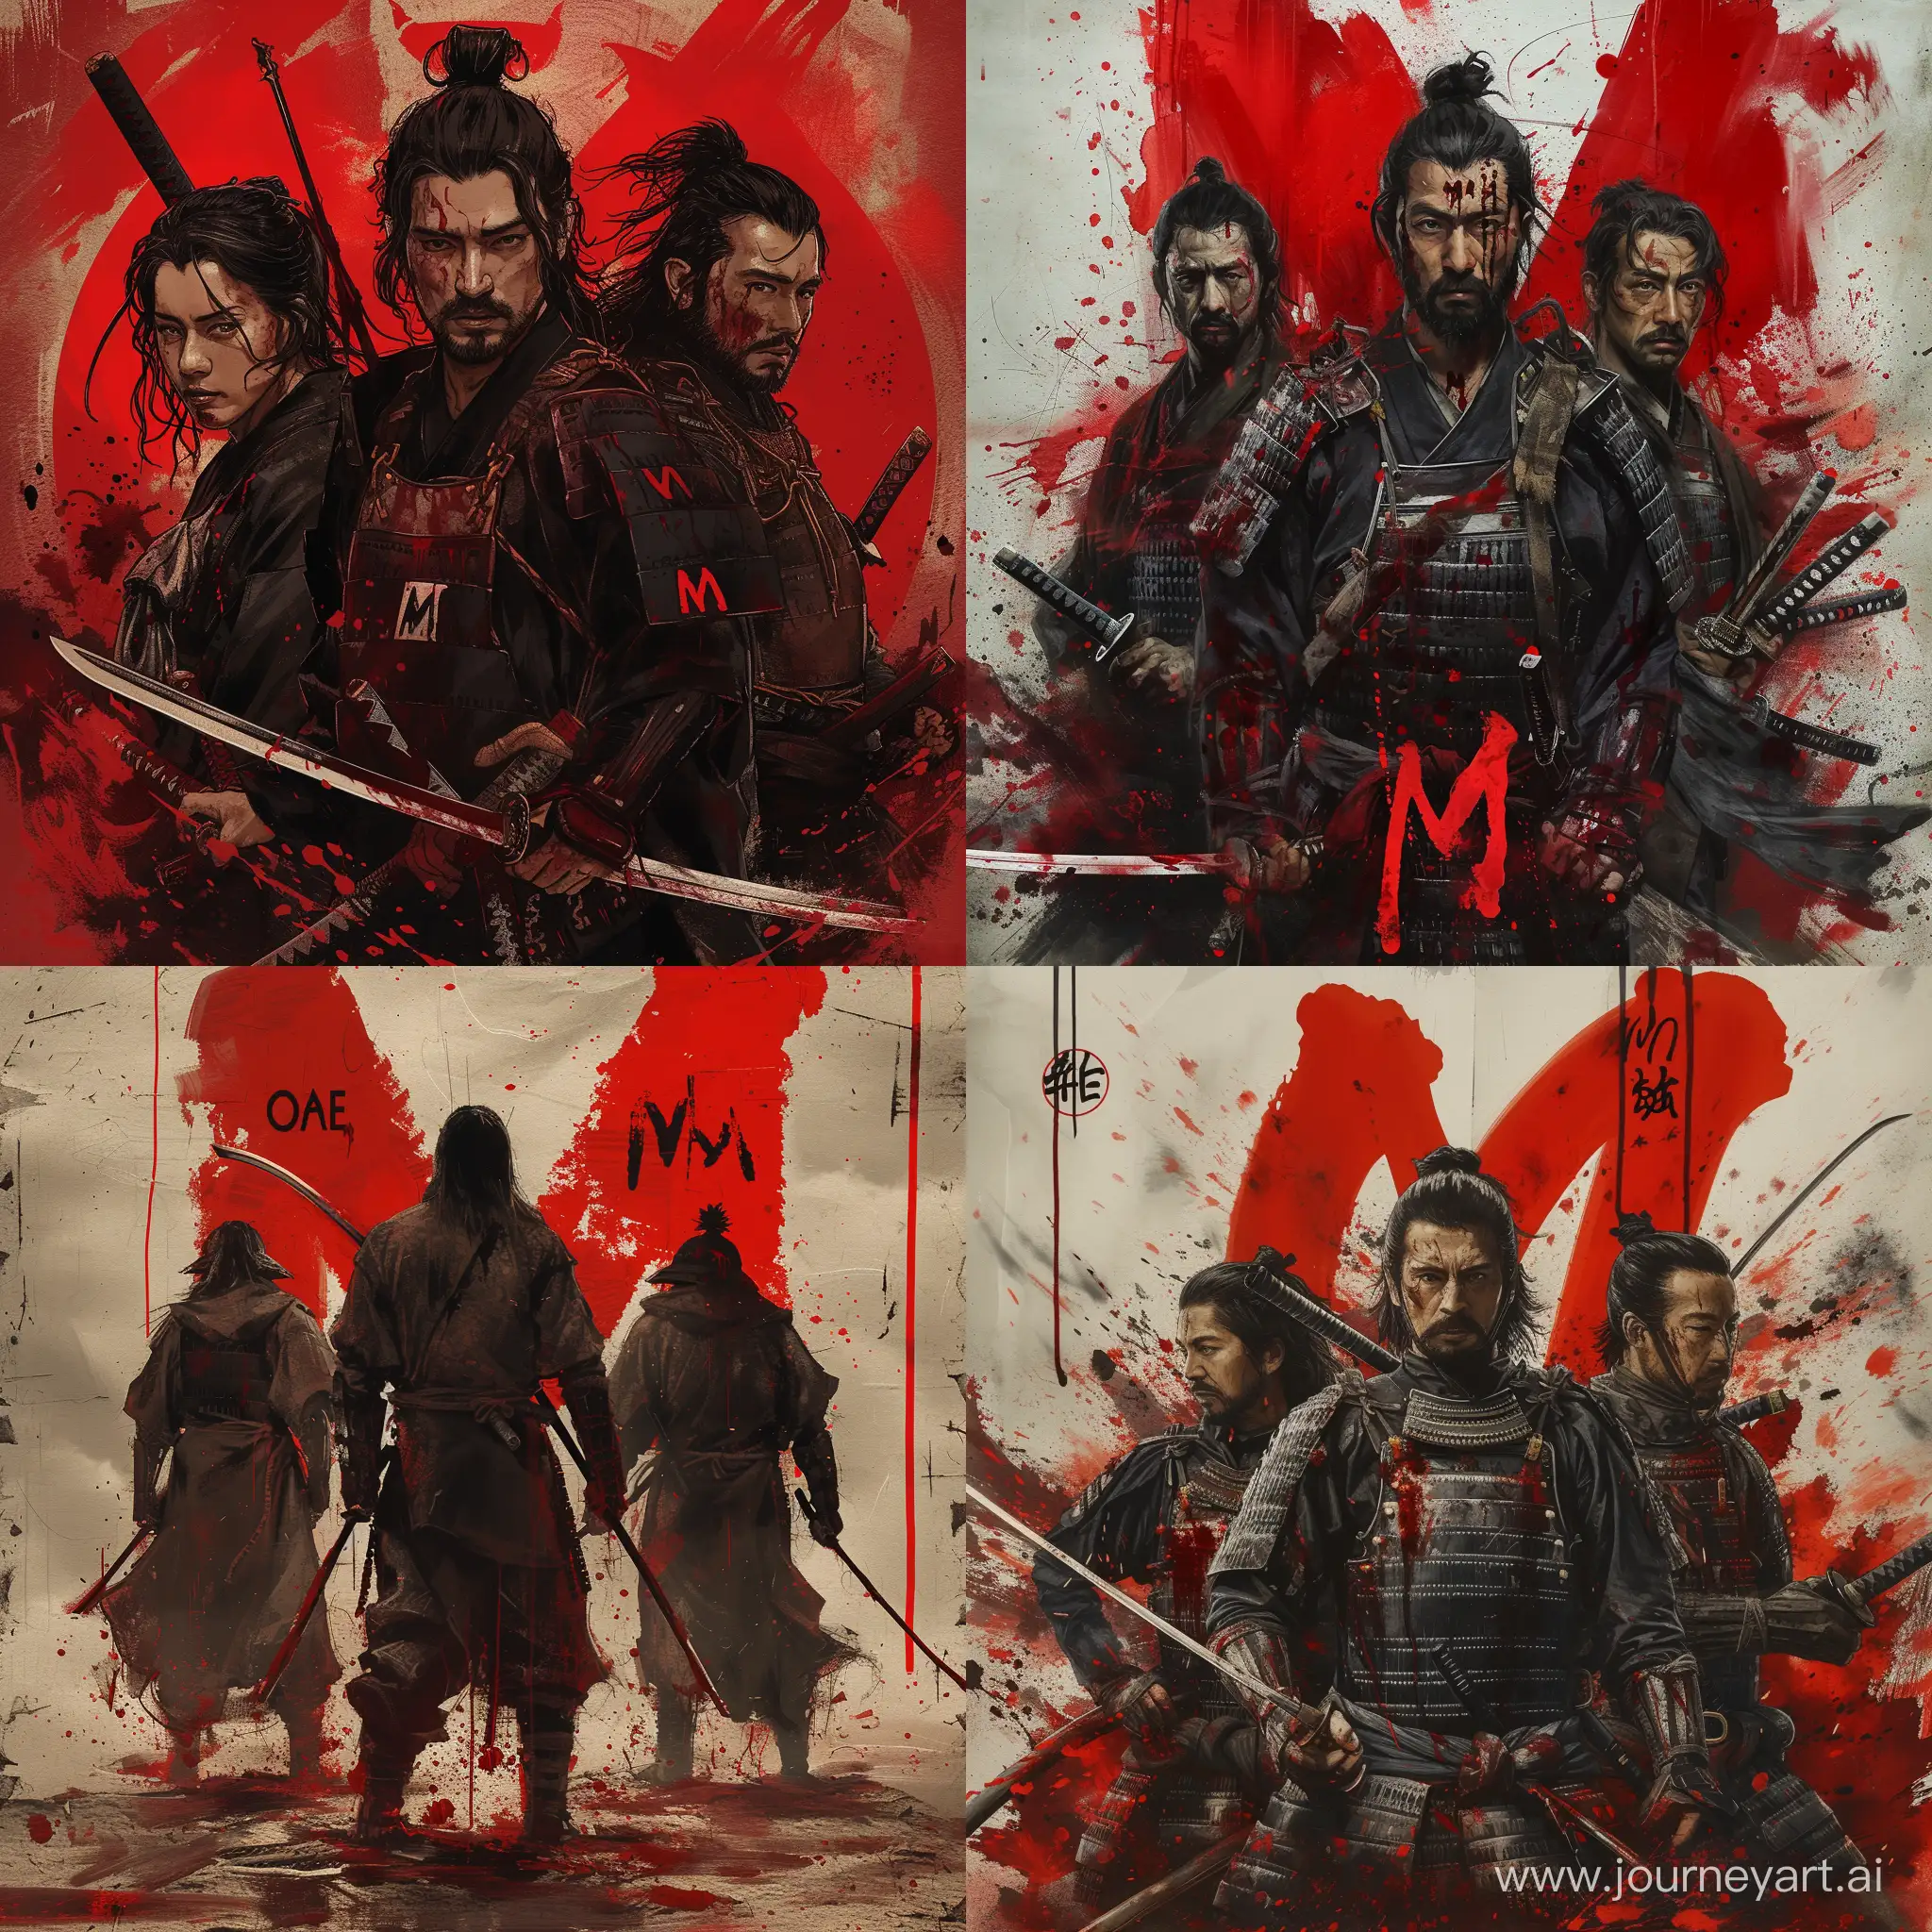 3 samurai’s alone in Joanna with triple M written in blood